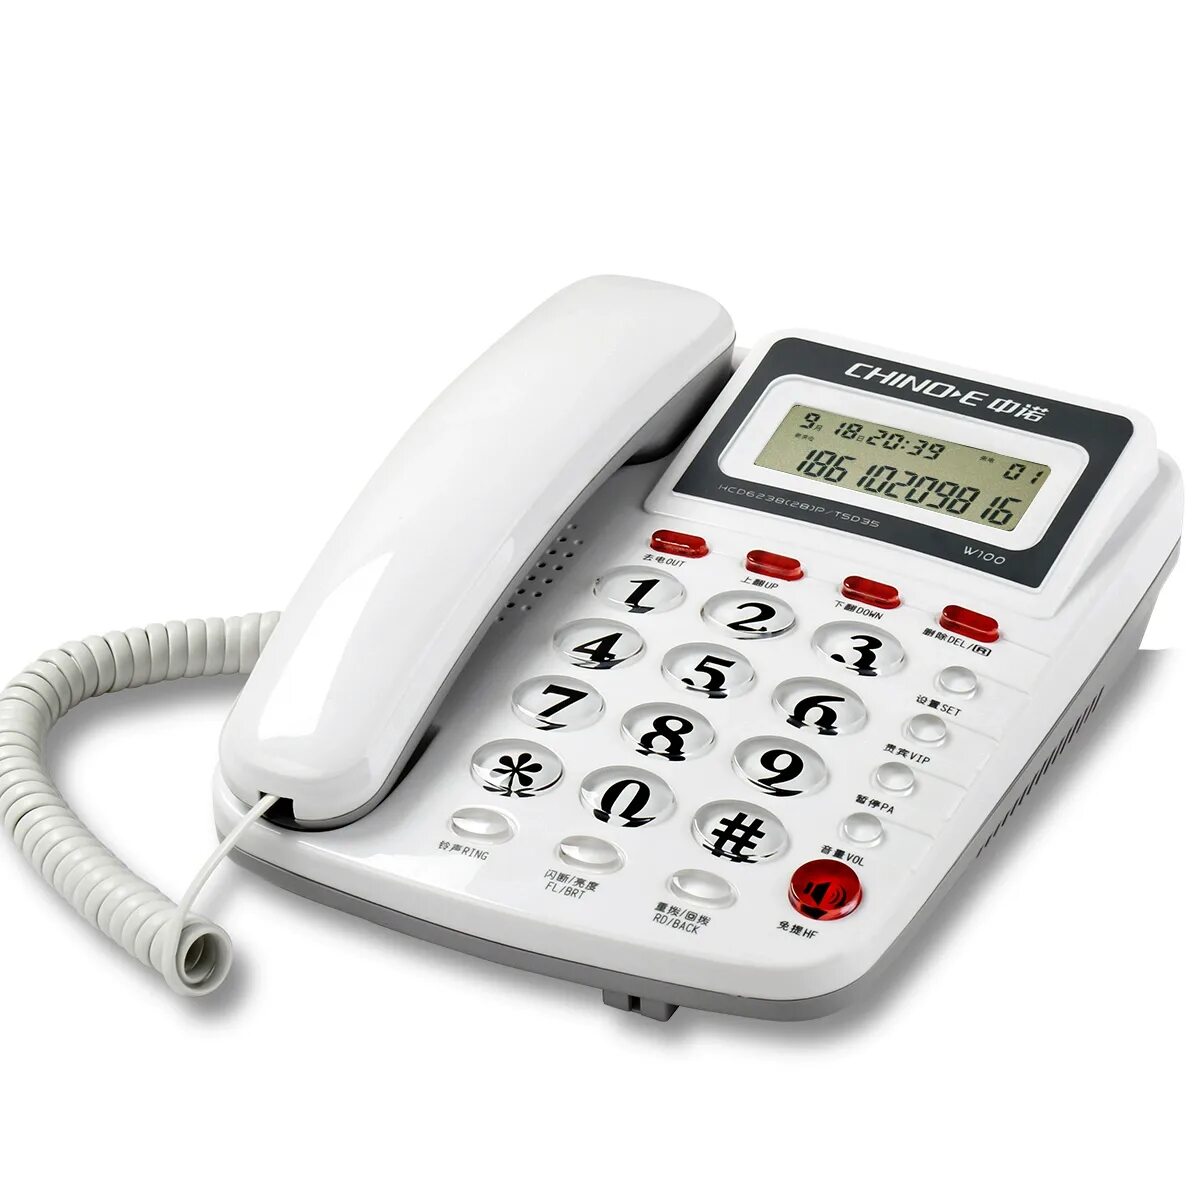 Стационарный телефон Intego kxt210. Проводной стационарный телефон буг202. Стационарный телефон Unitel City. Стационарный телефон model 8080. Куплю настольный телефон